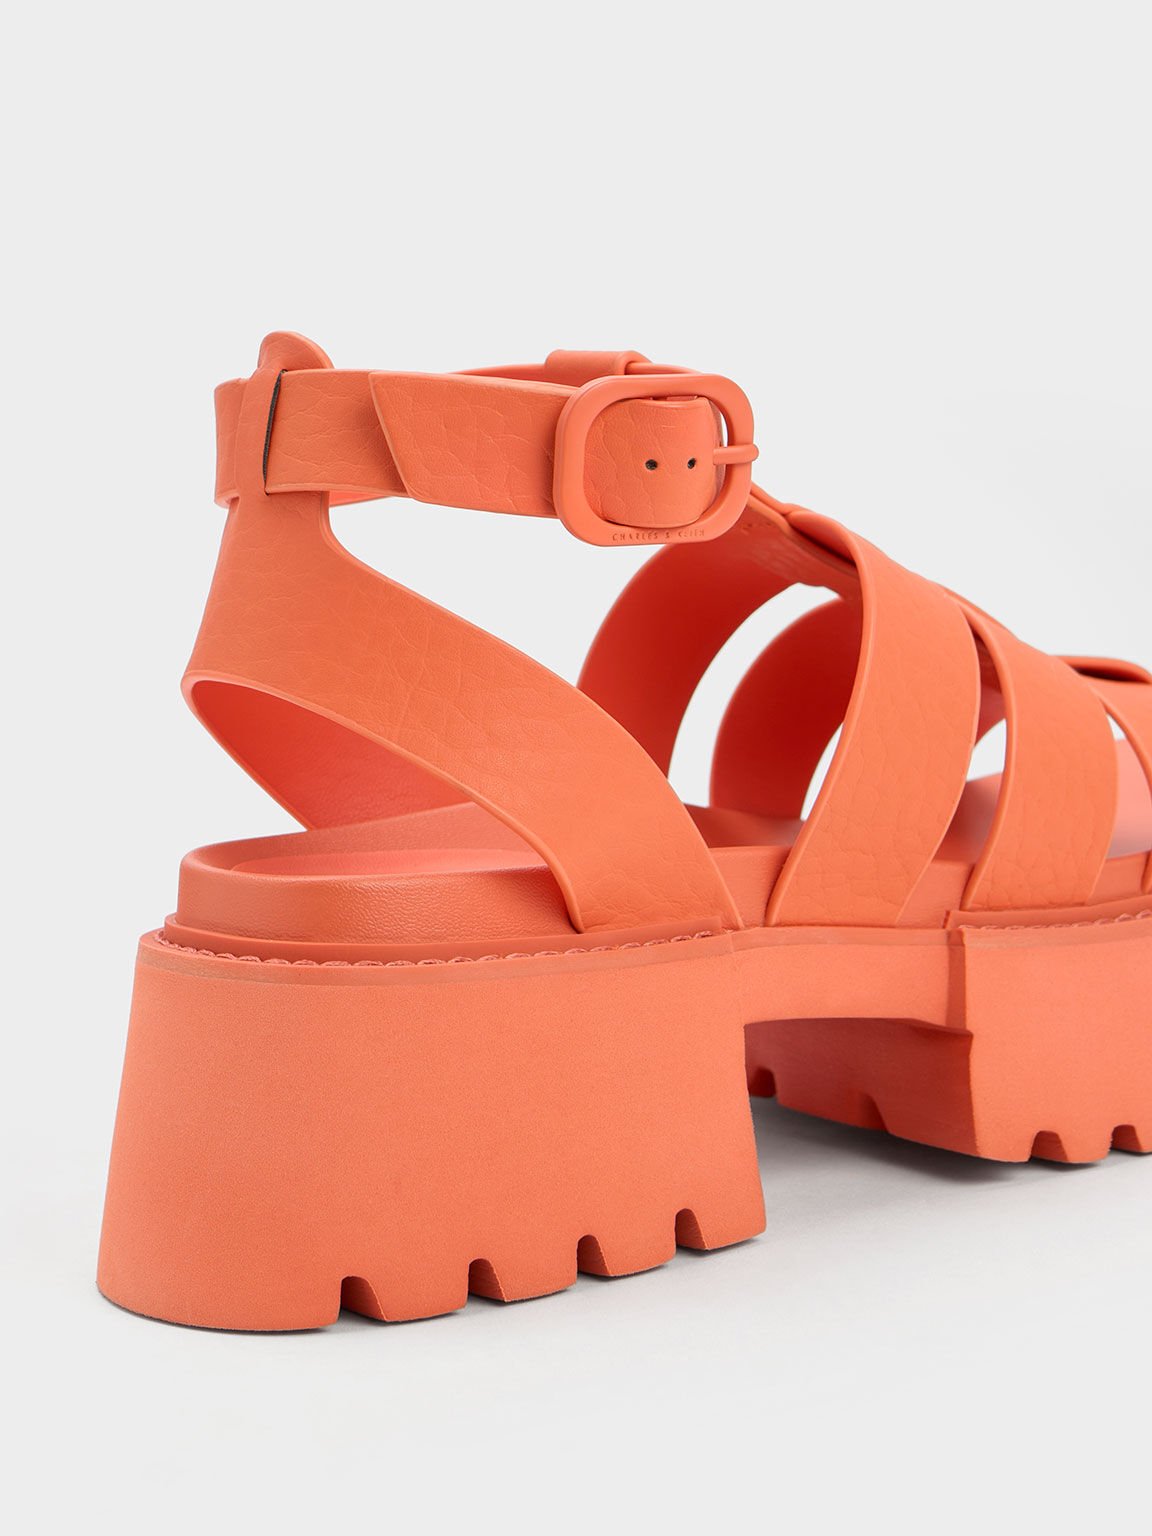 Nadine Gladiator Platform Sandals, Orange, hi-res